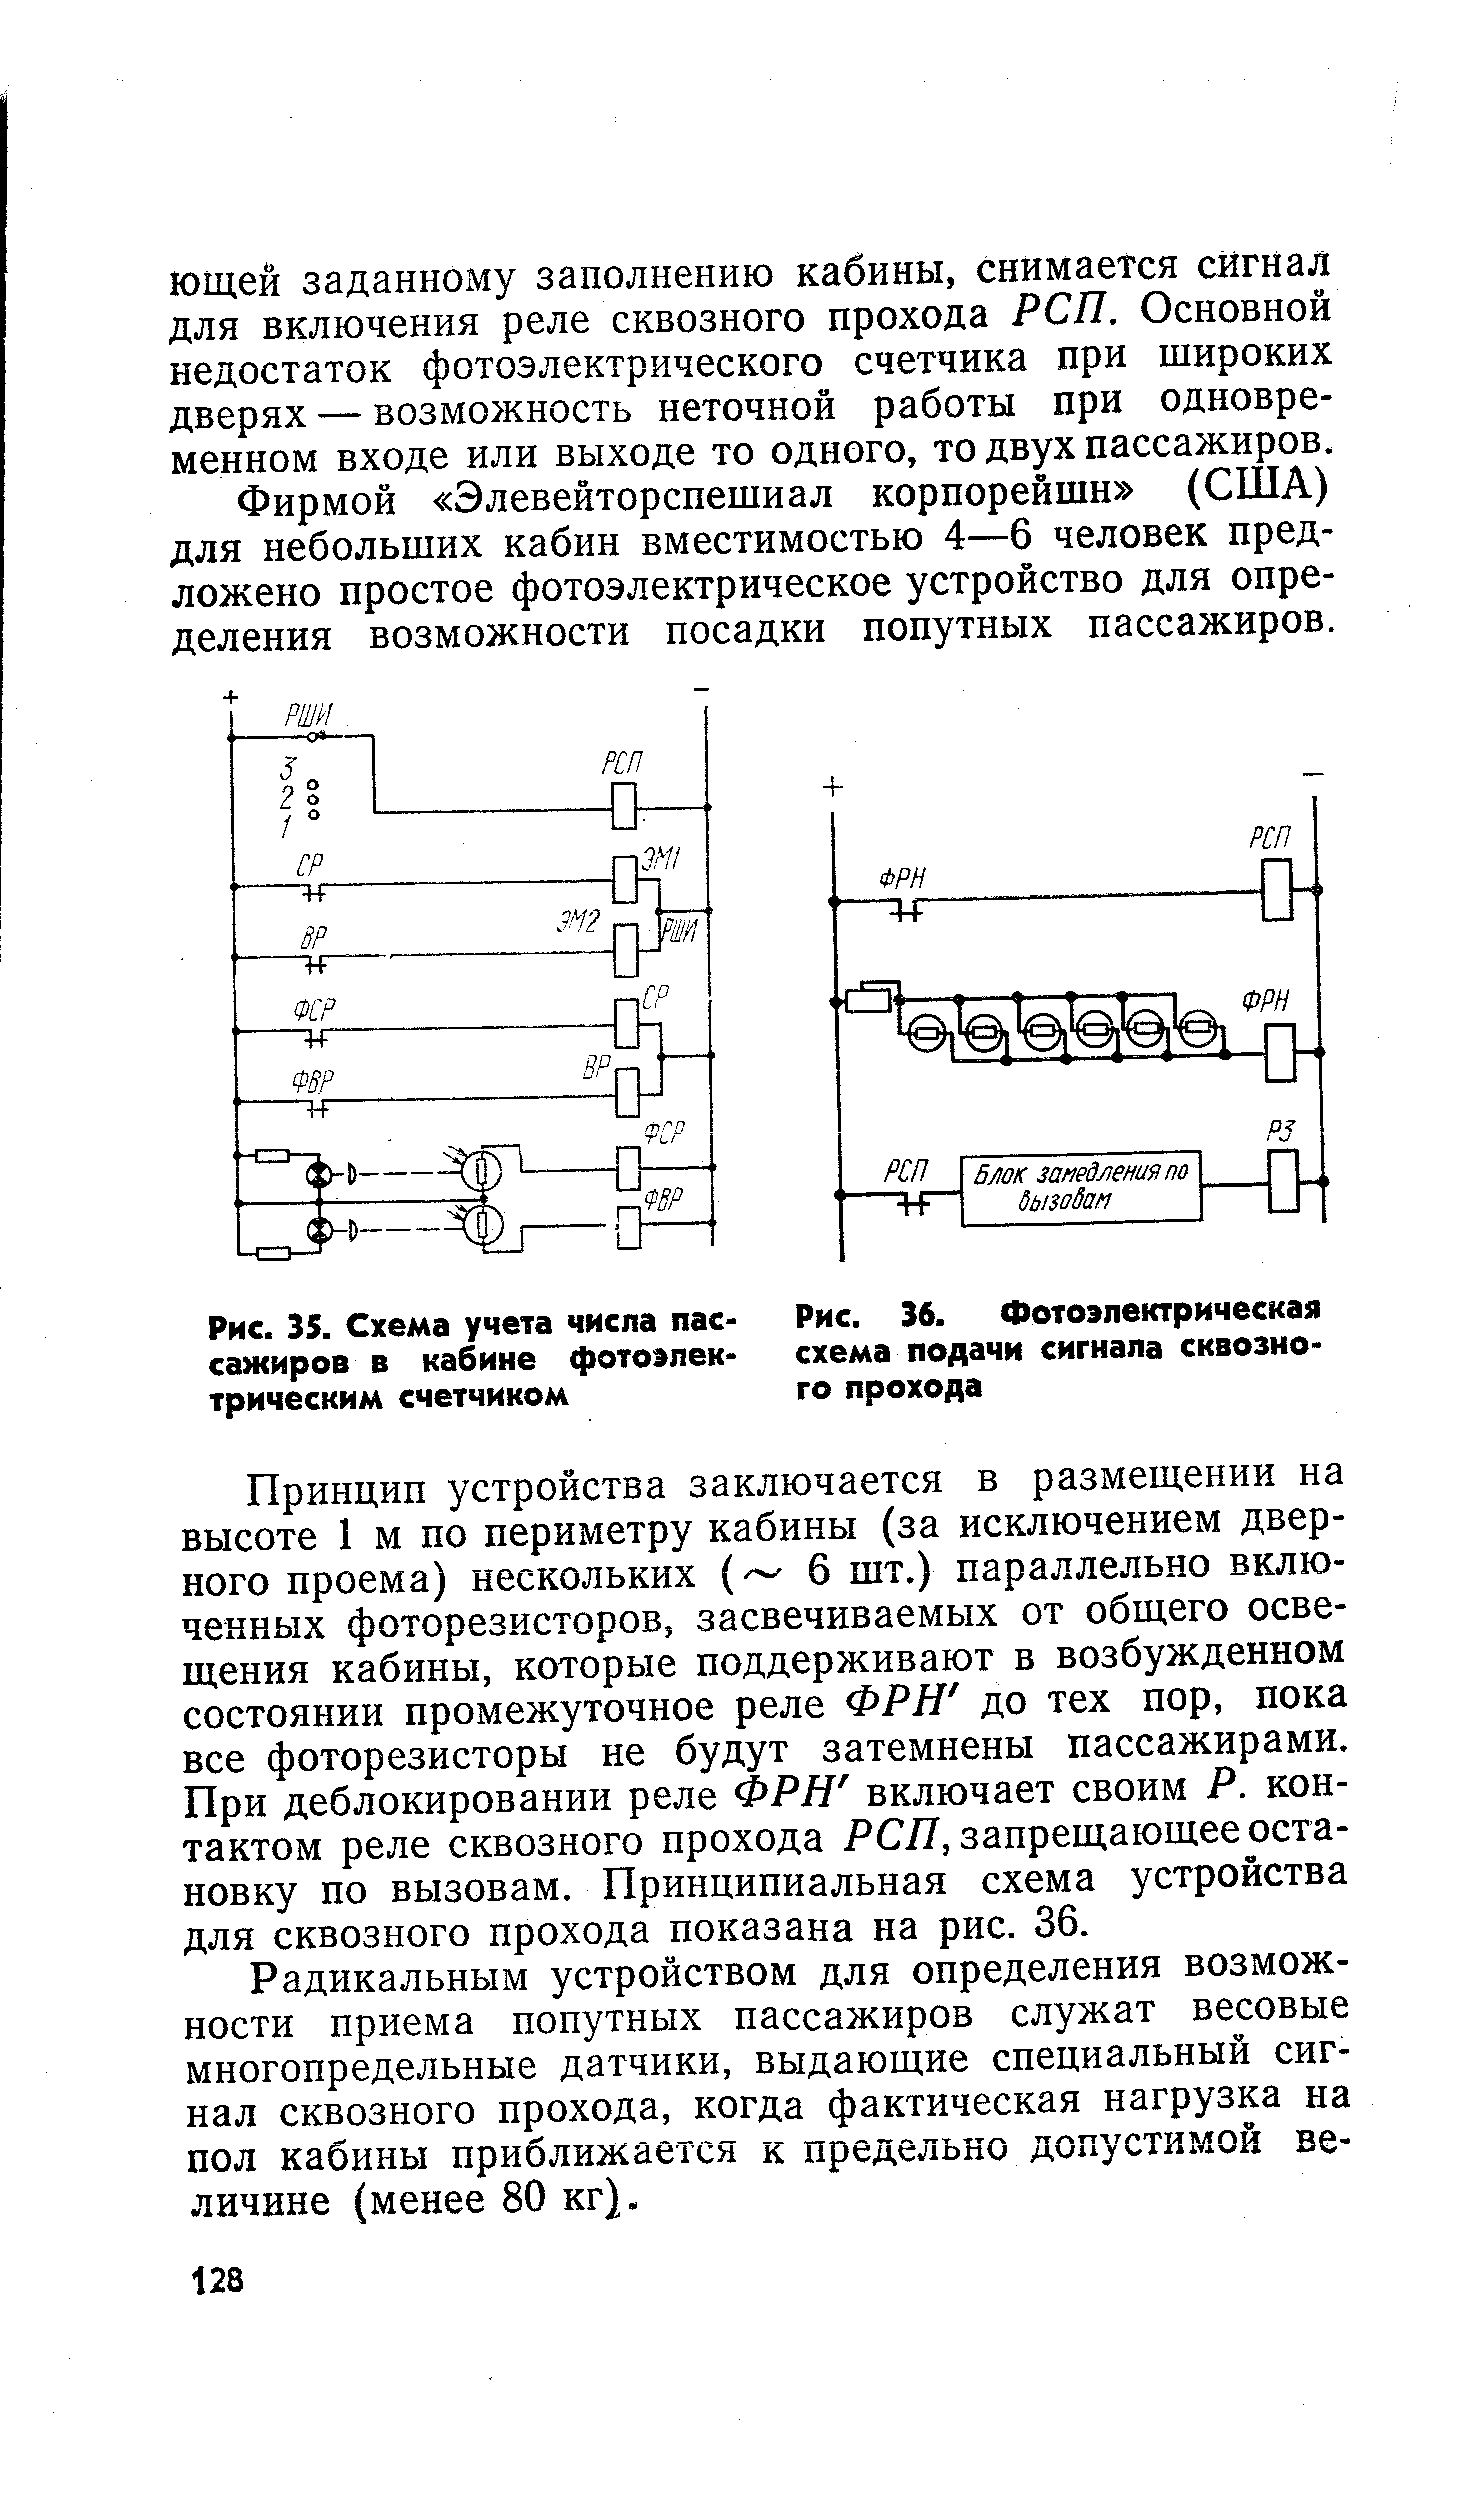 Рис. 36. Фотоэлектрическая схема подачи сигнала сквозного прохода
